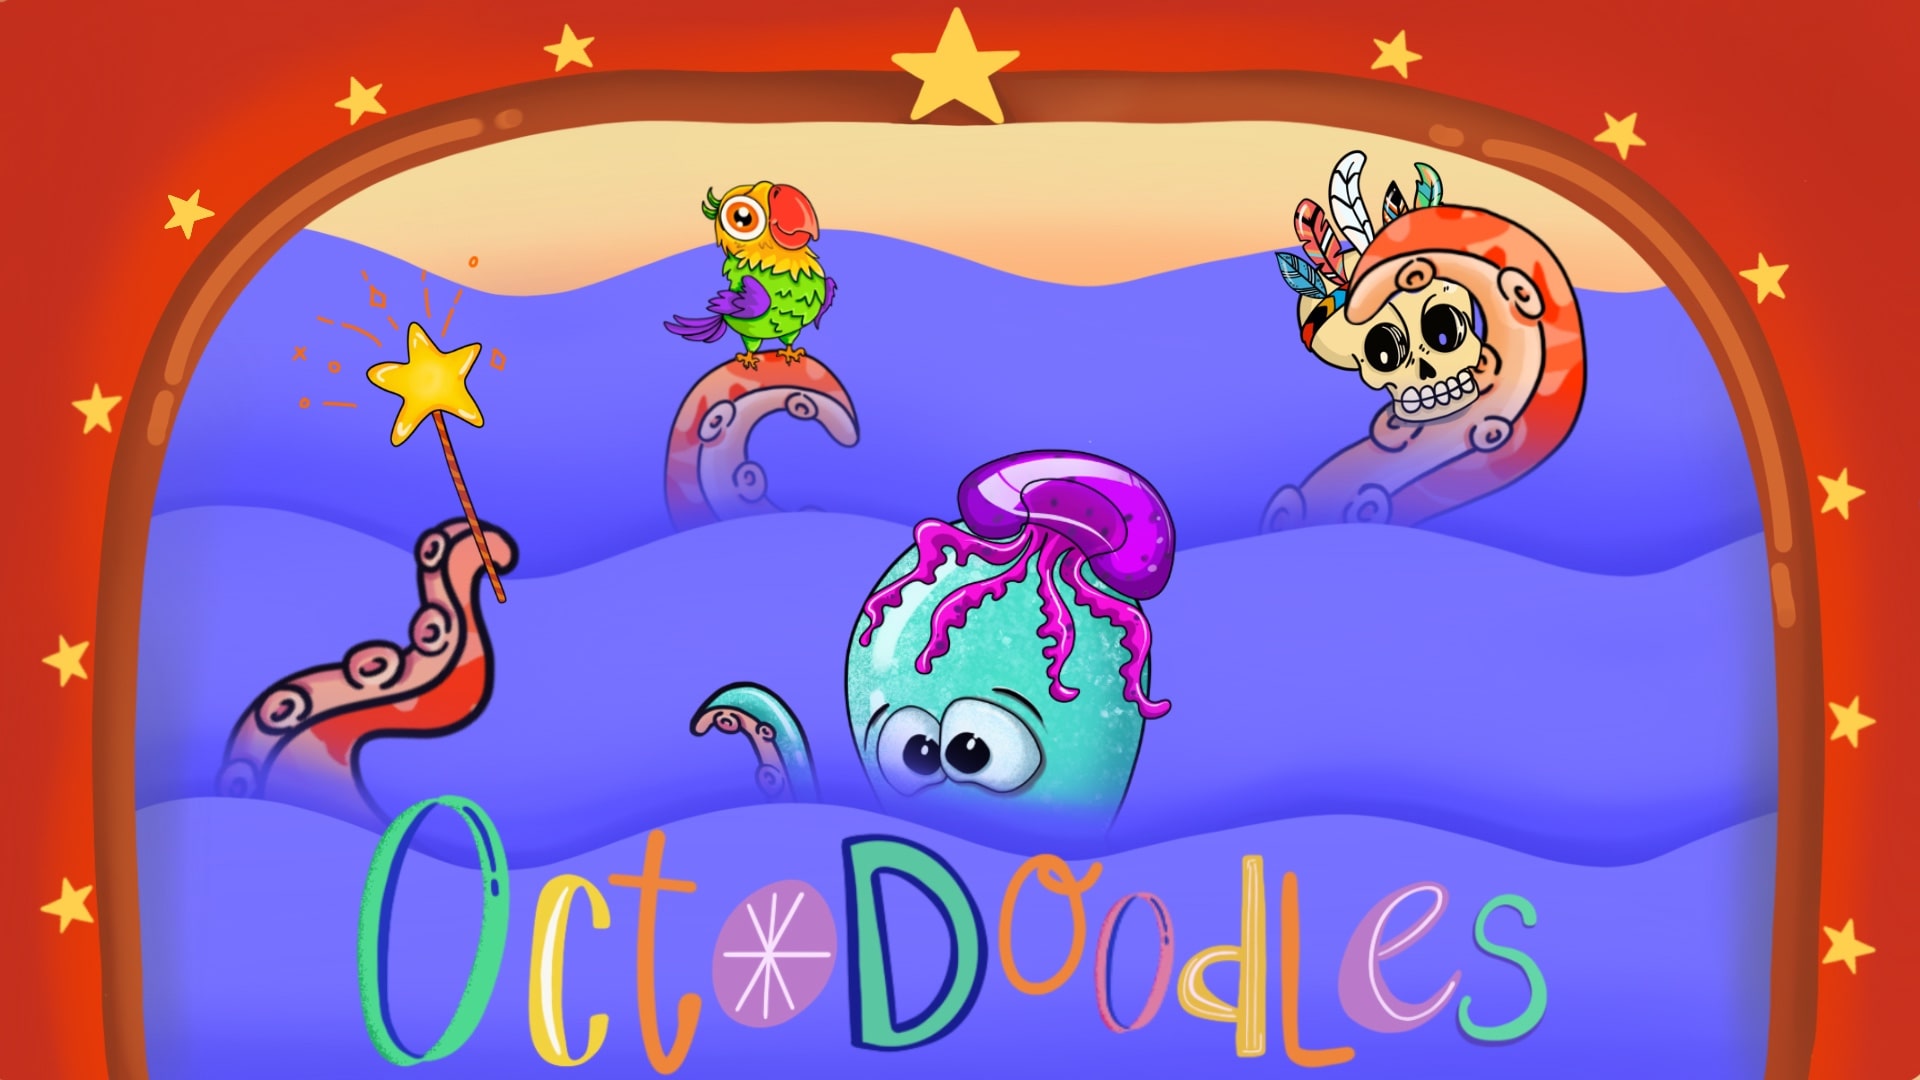 Octodoodles